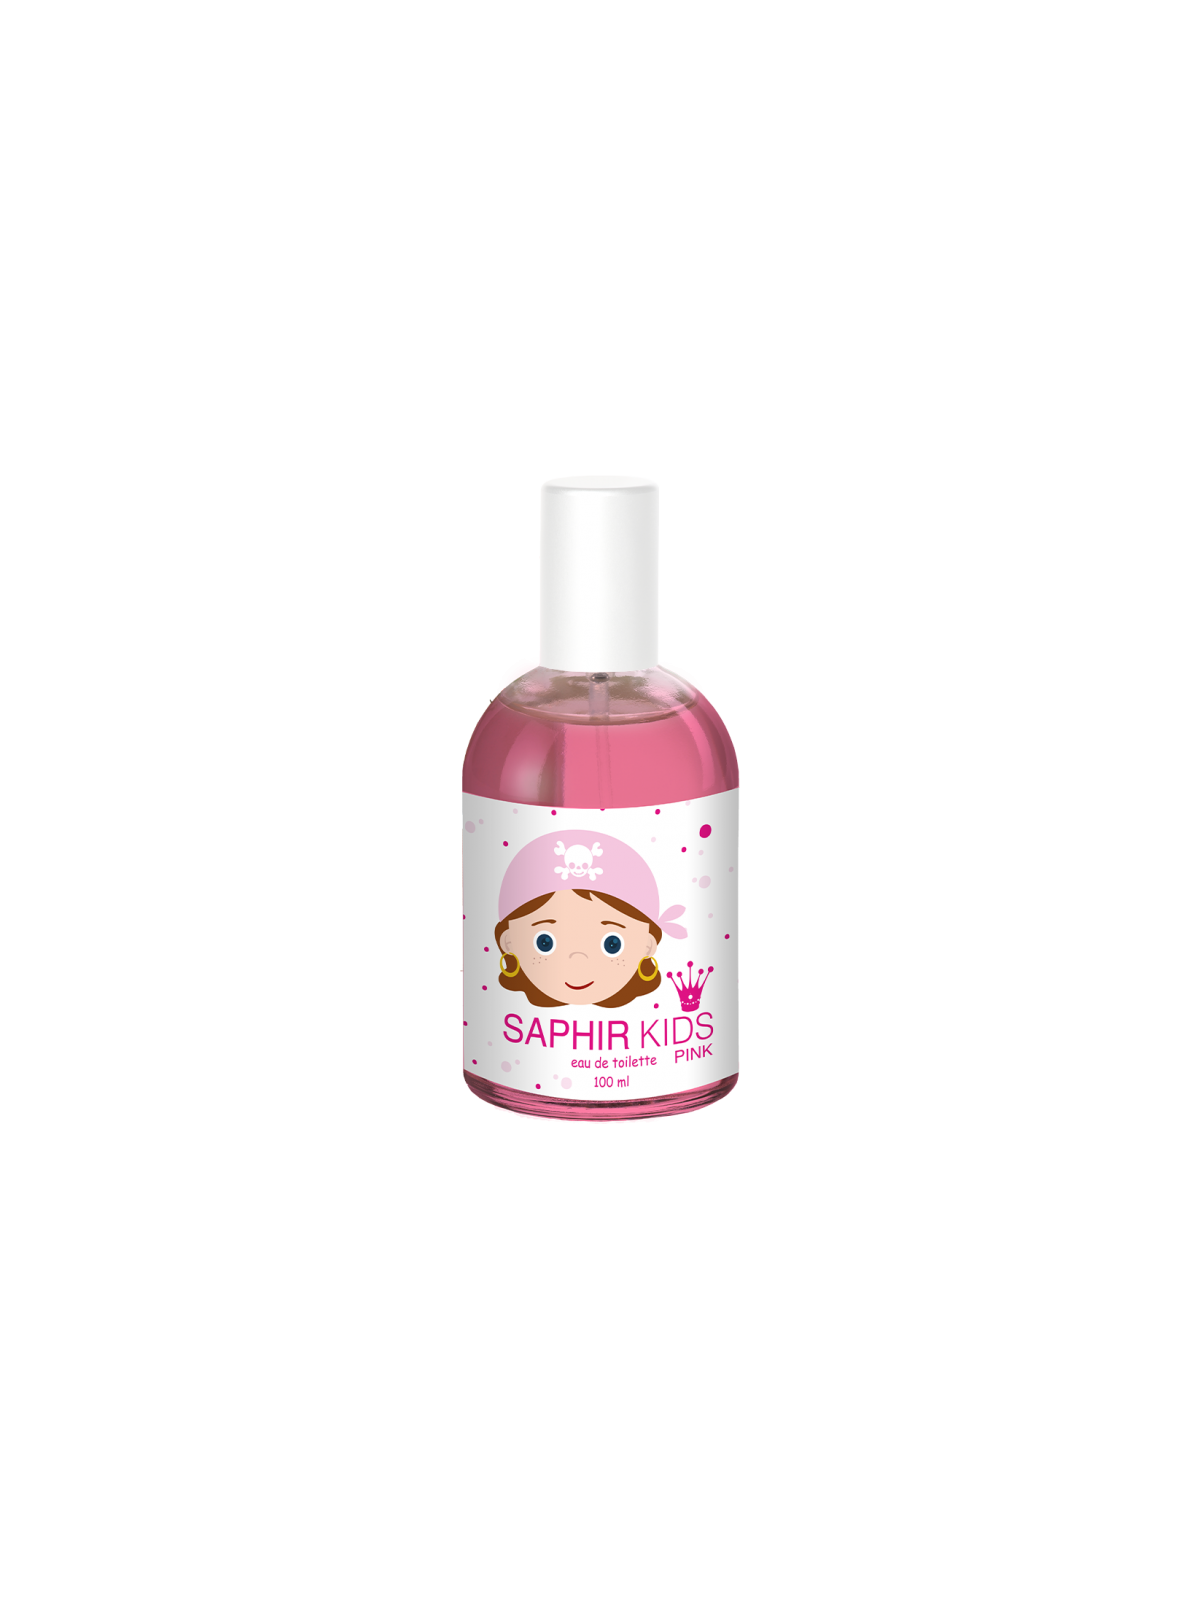 Comprar Perfume SAPHIR Kids Pink 100ML. en Perfumes para niños por sólo 5,80 € o un precio específico de 5,80 € en Thalie Care